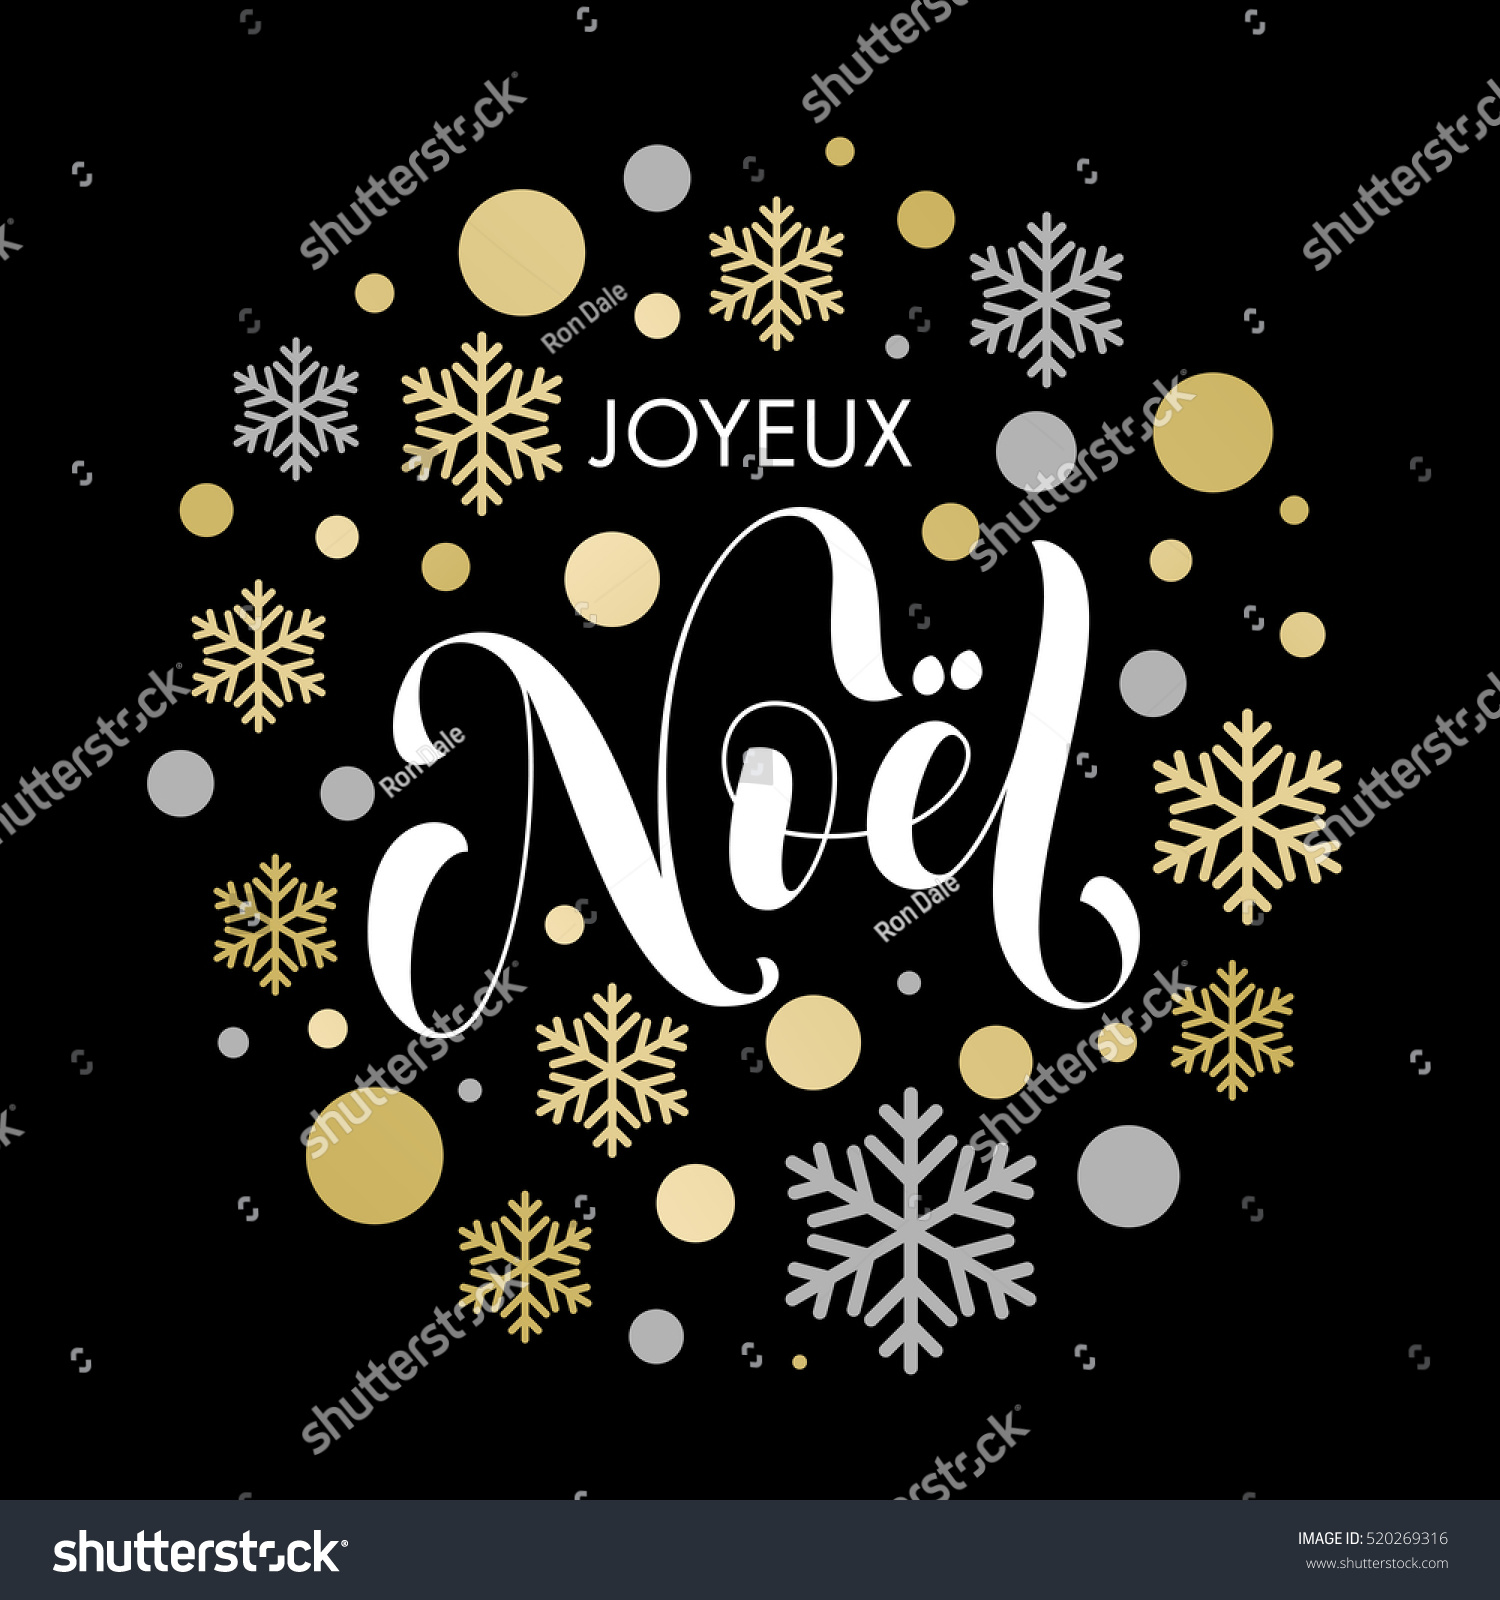 French Christmas Joyeux Noel Golden Glitter Stock Vector Royalty Free